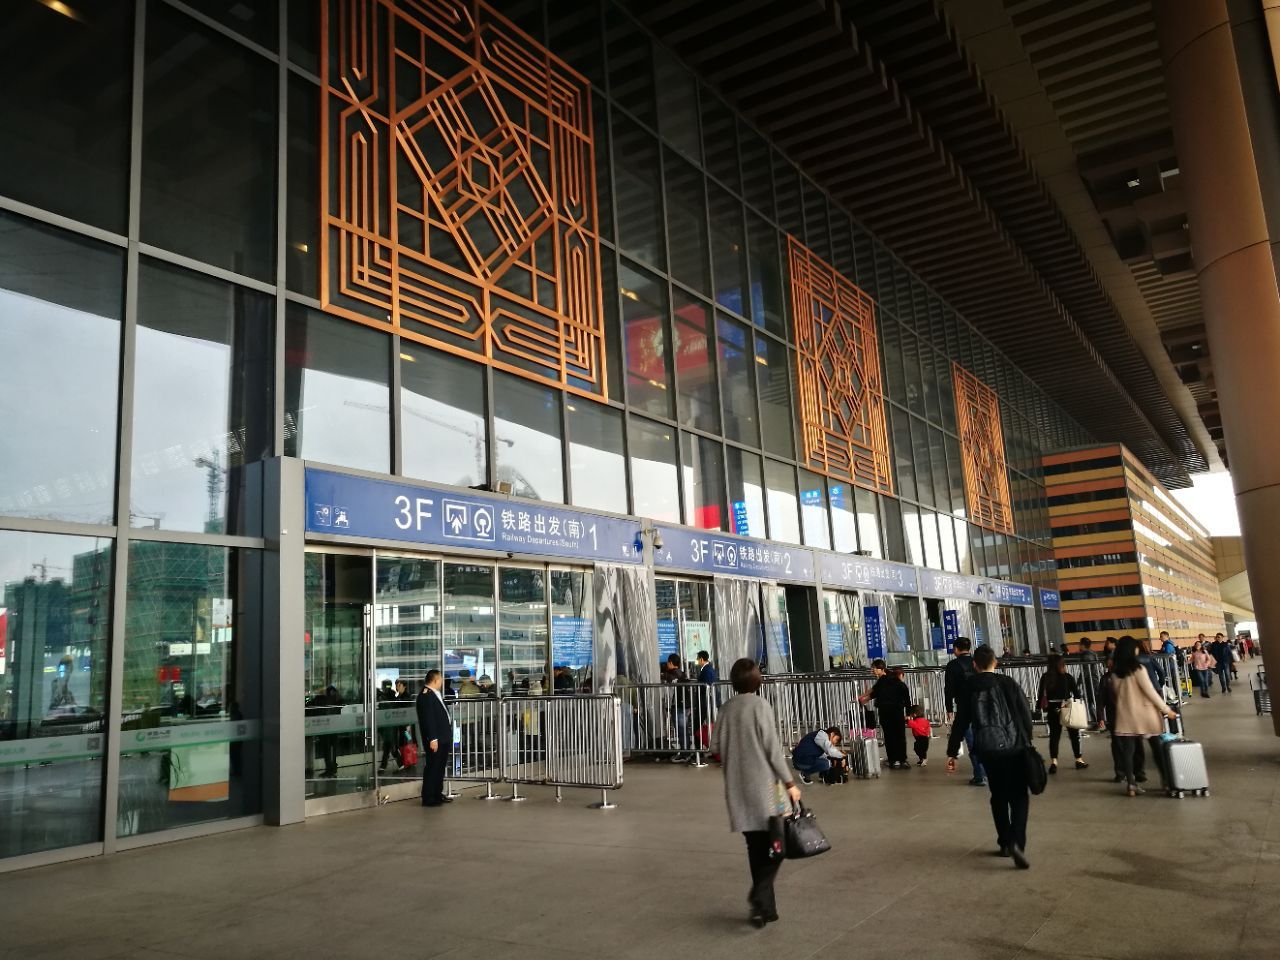 南京火车站站台图片